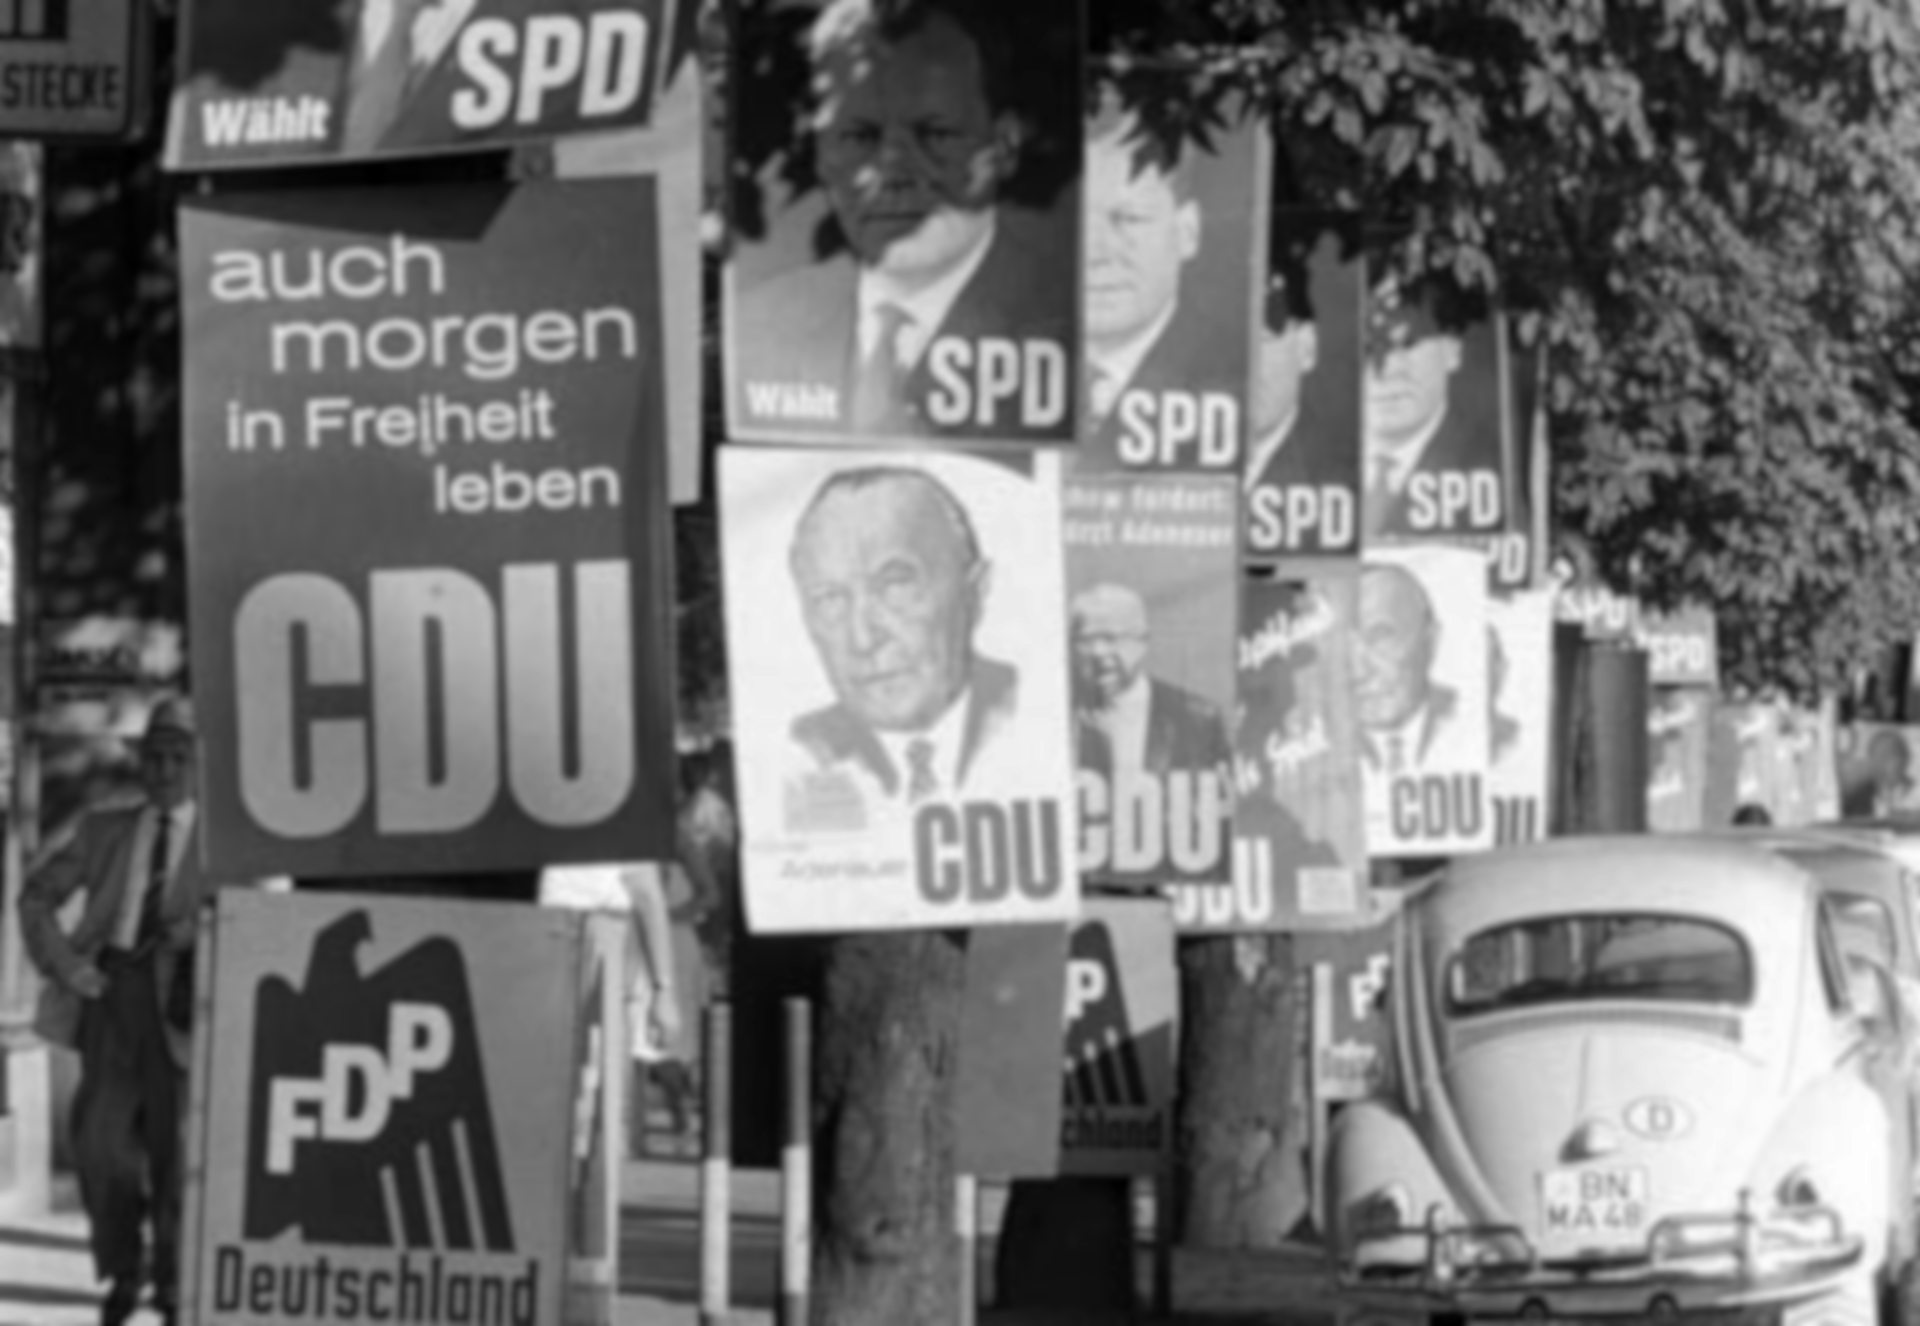 Schwarz-Weiß-Fotografie: an Bäumen befestigte Wahlplakate der FDP, CDU und SPD.